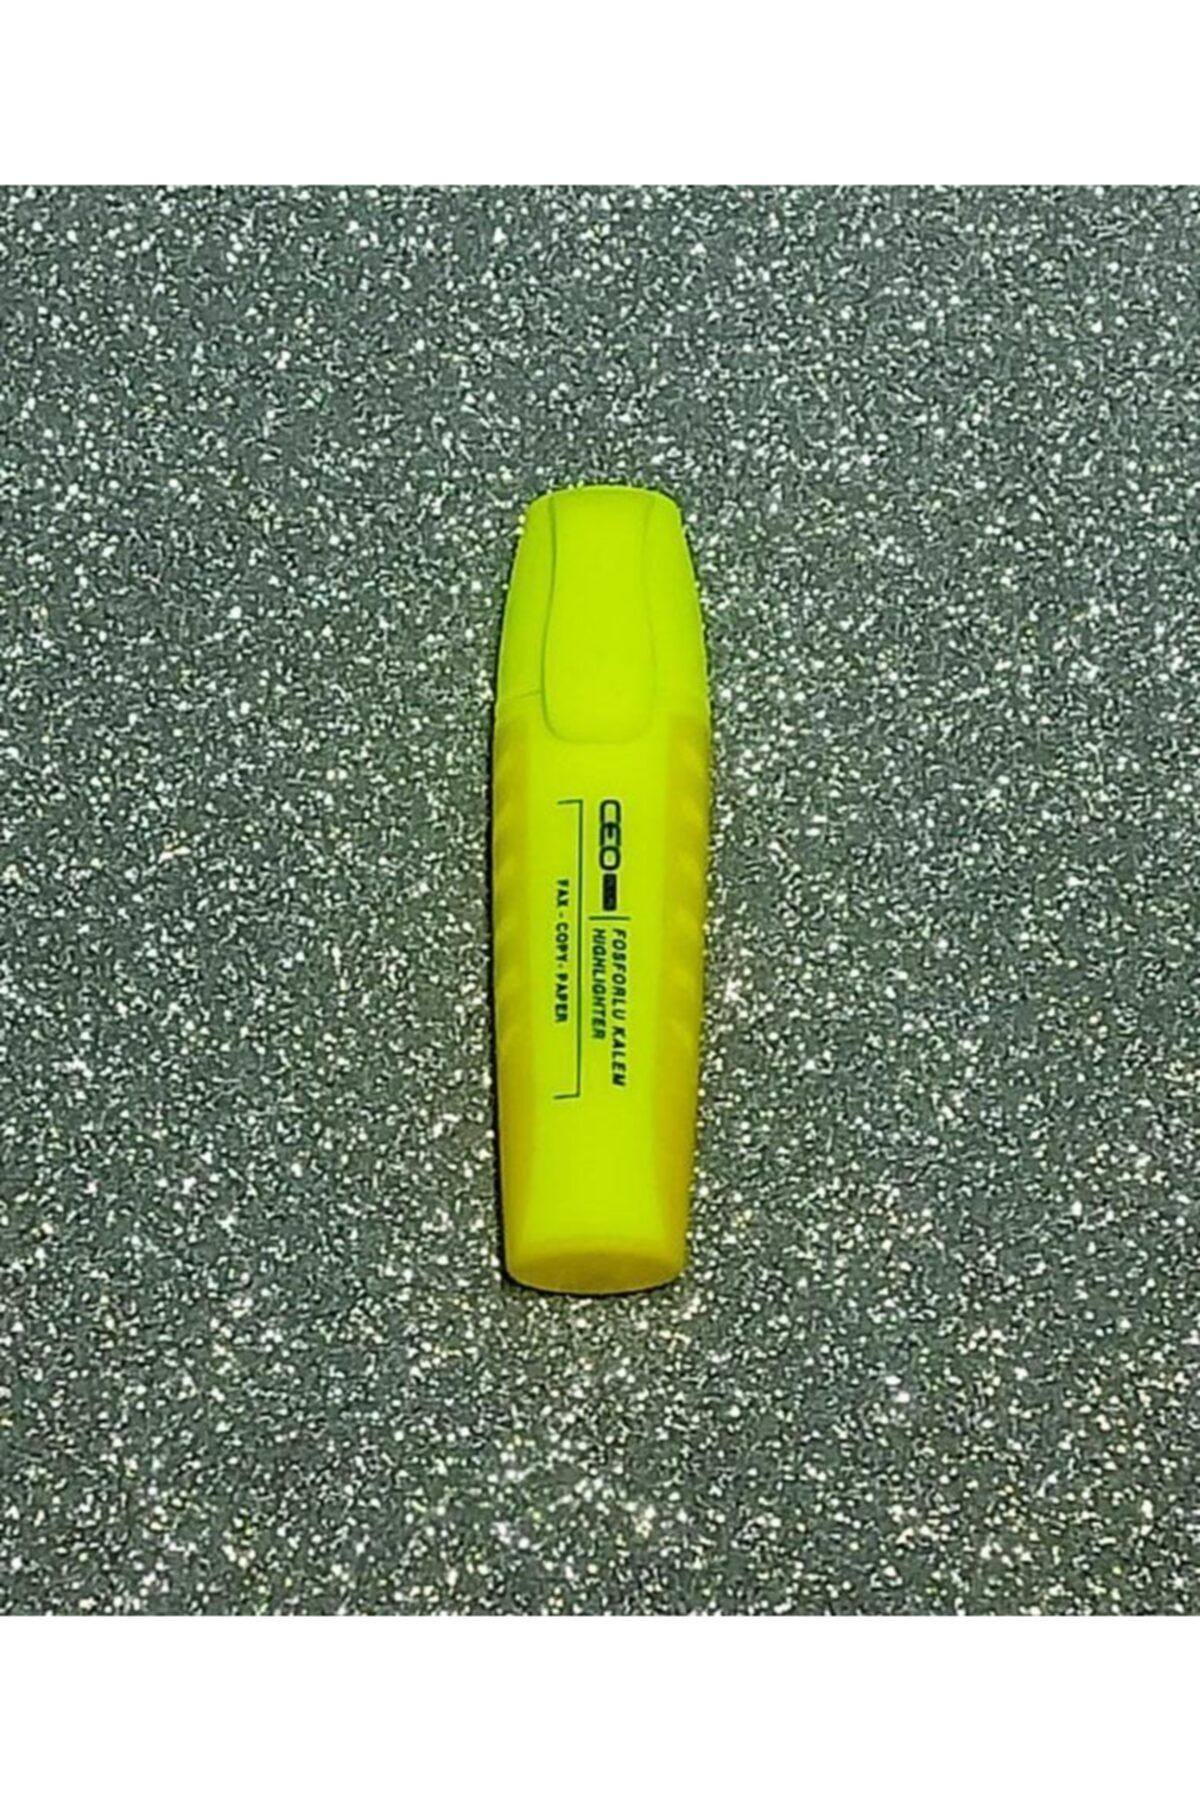 Ceo Neon Sarı Kulplu Fosforlu Kalem